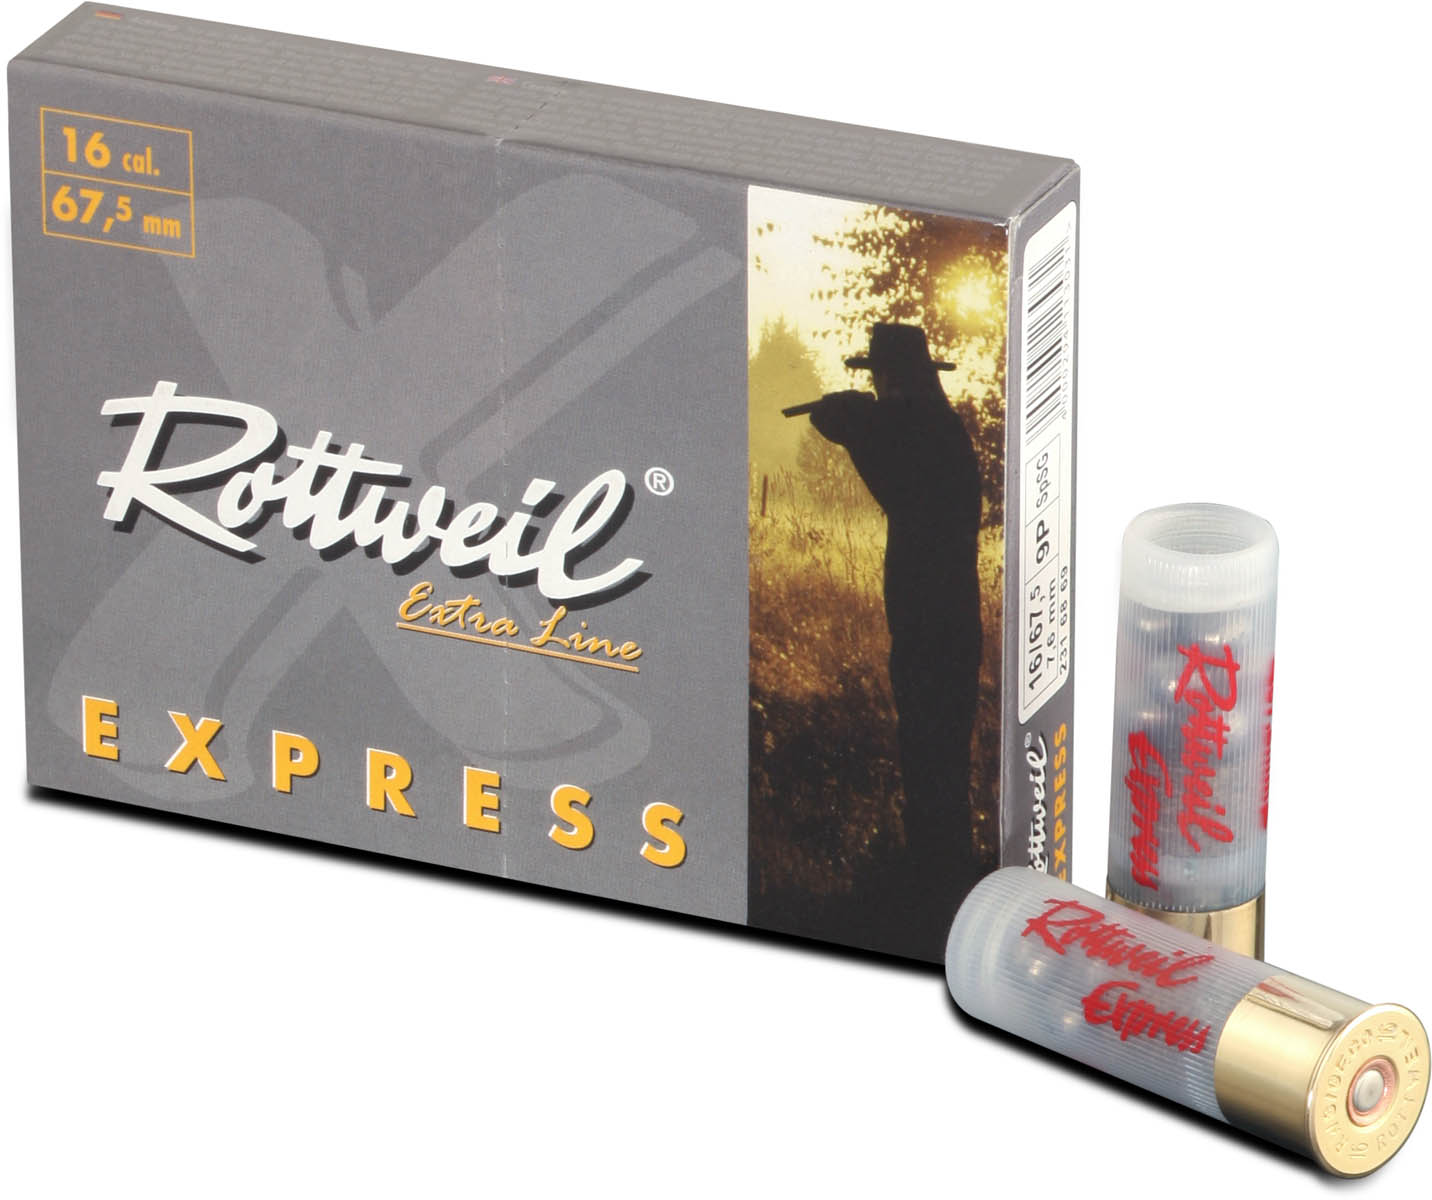 Rottweil 16/67,5 Express 7,4mm - 9 Posten - gut für die Jagd in unwegigem Gelände und dichtem Gebüsch